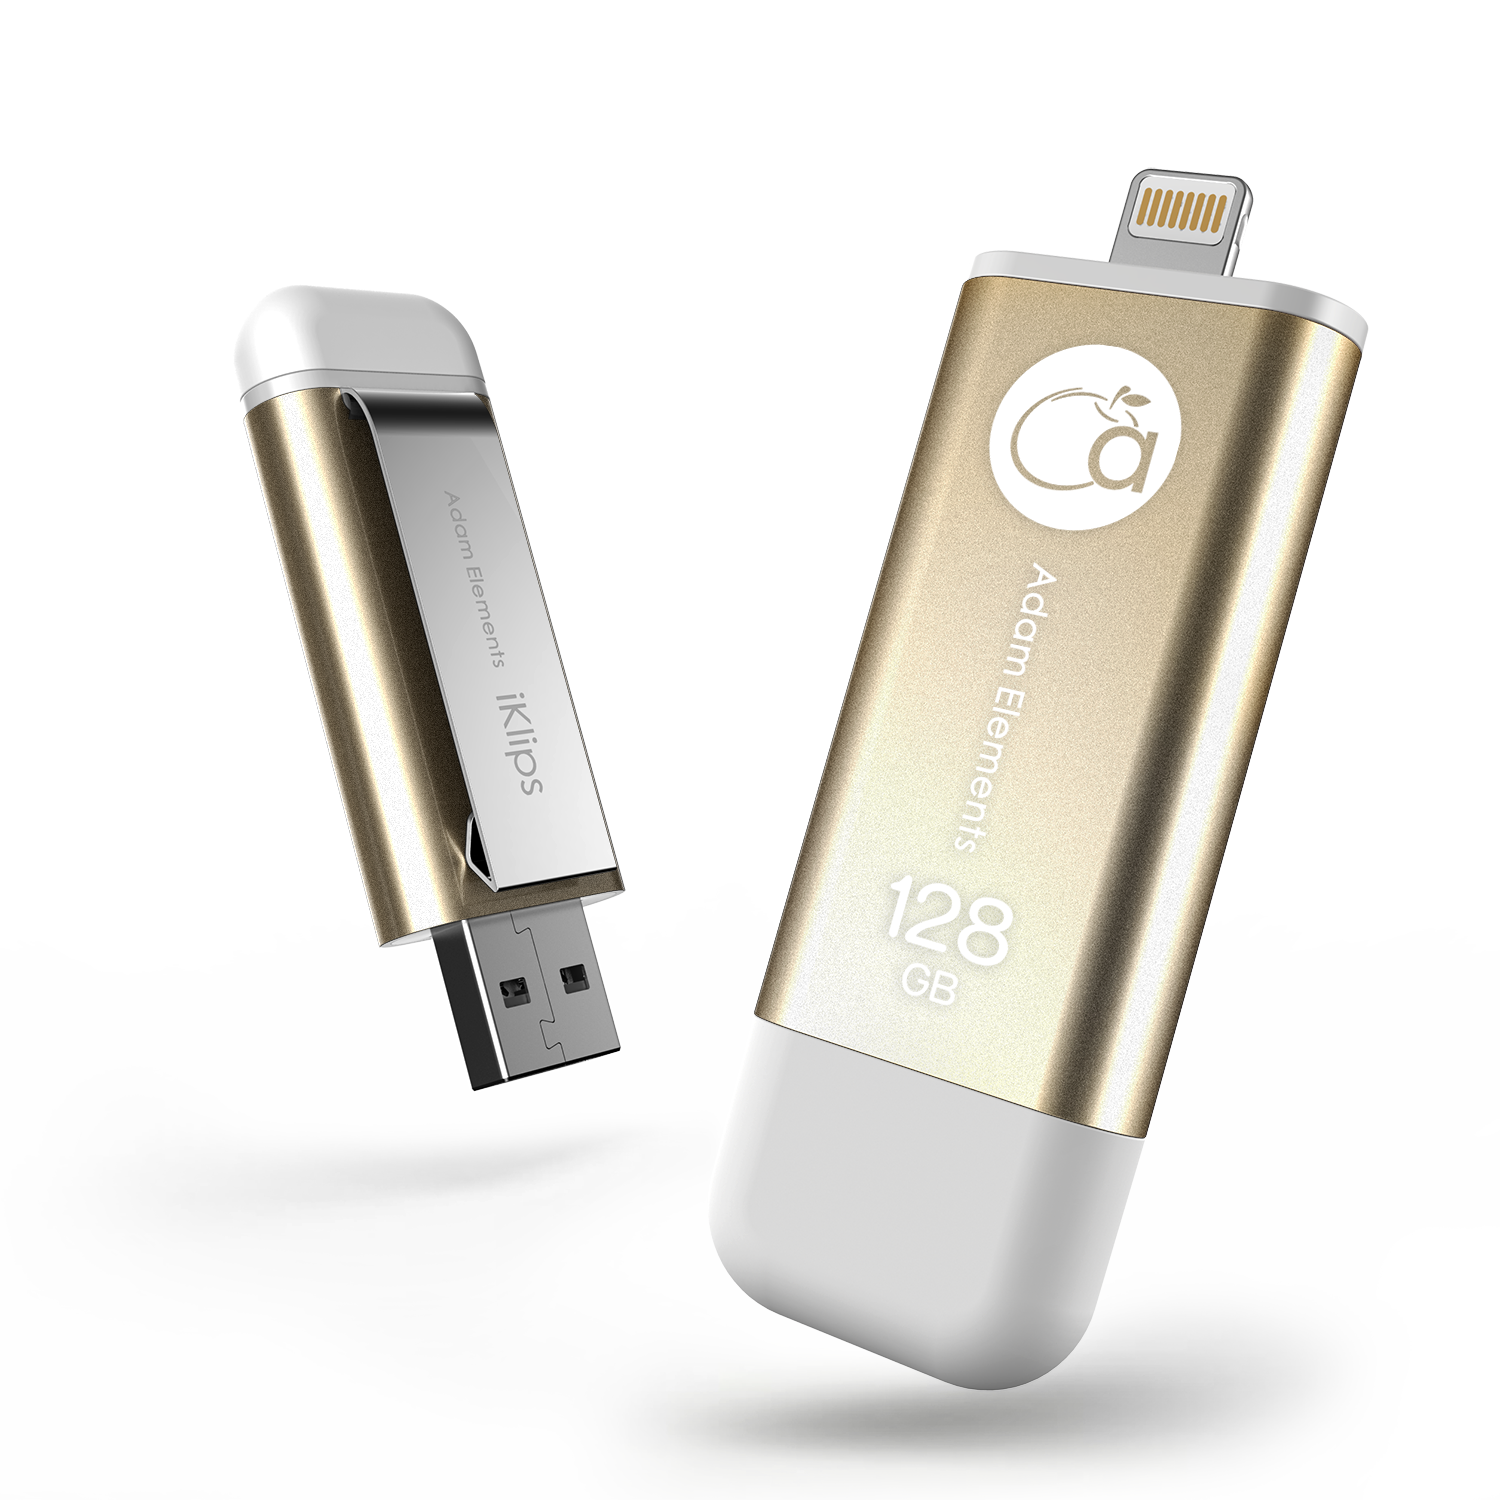 64GB 【iKlips】iOS系統專用USB 3.0極速多媒體行動碟 64GB 金色 亞果元素  